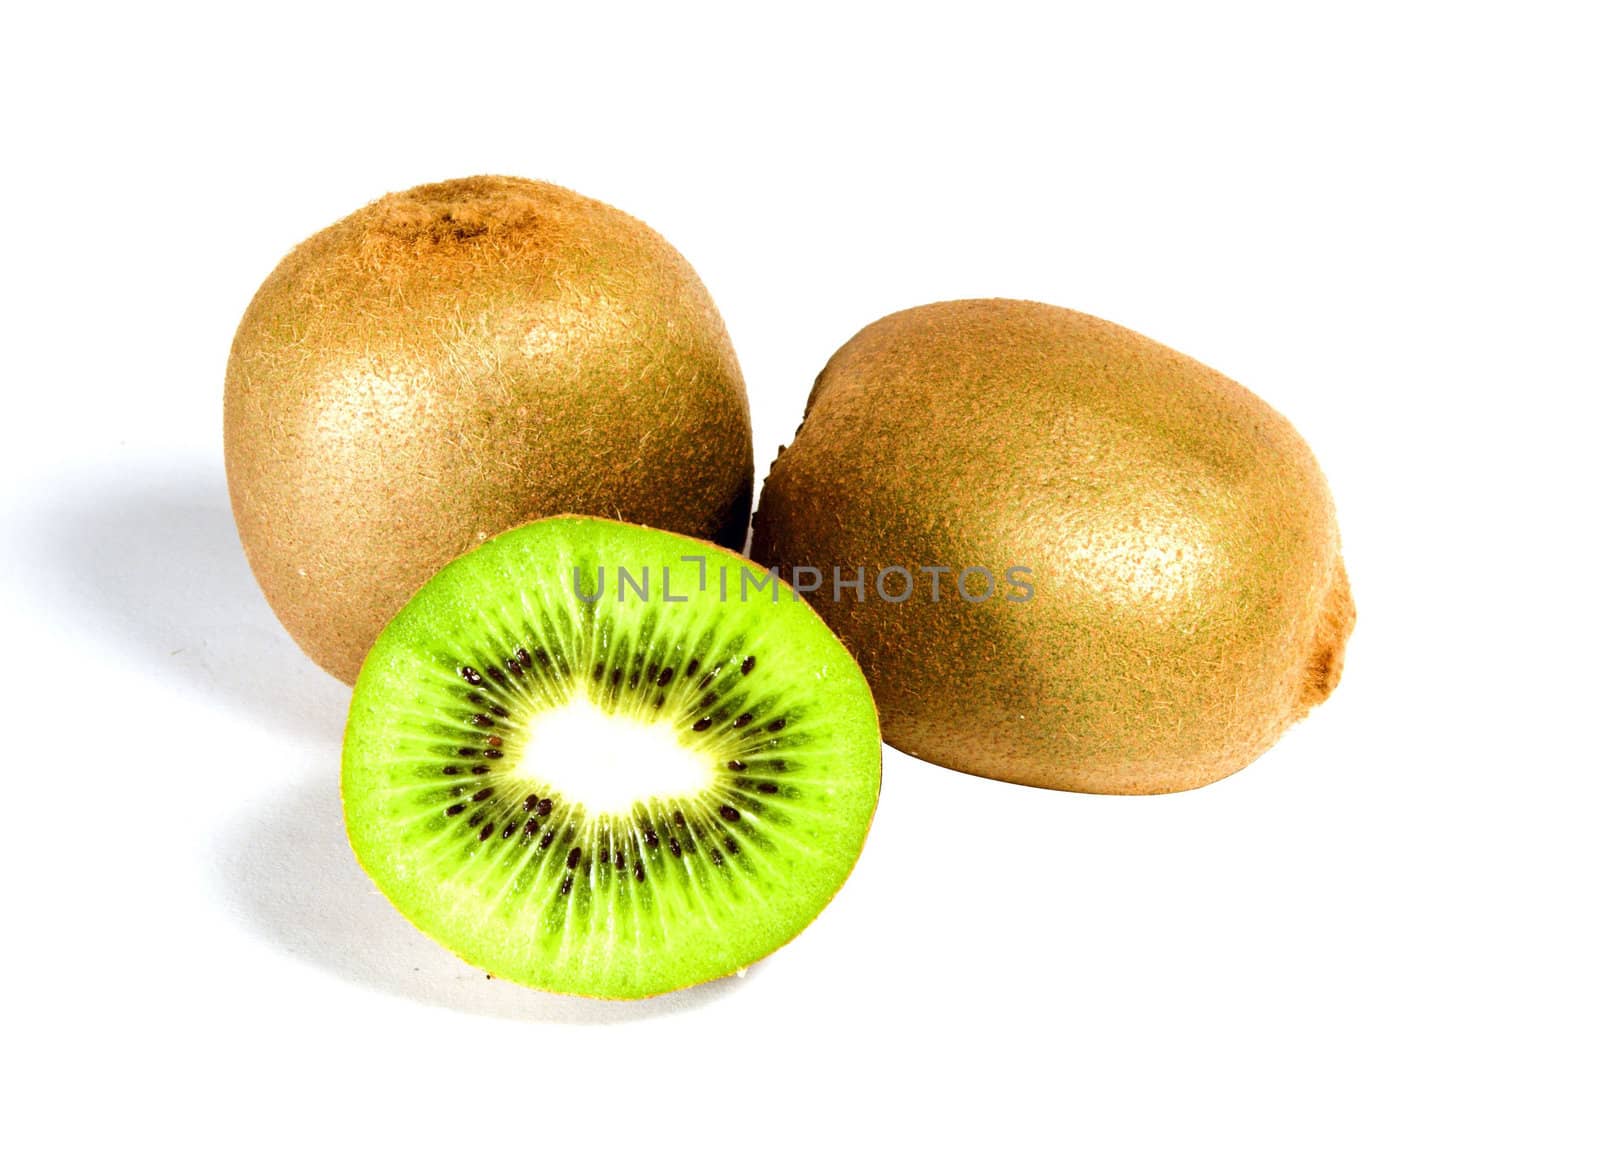 A perfectly fresh kiwifruit isolated on white.